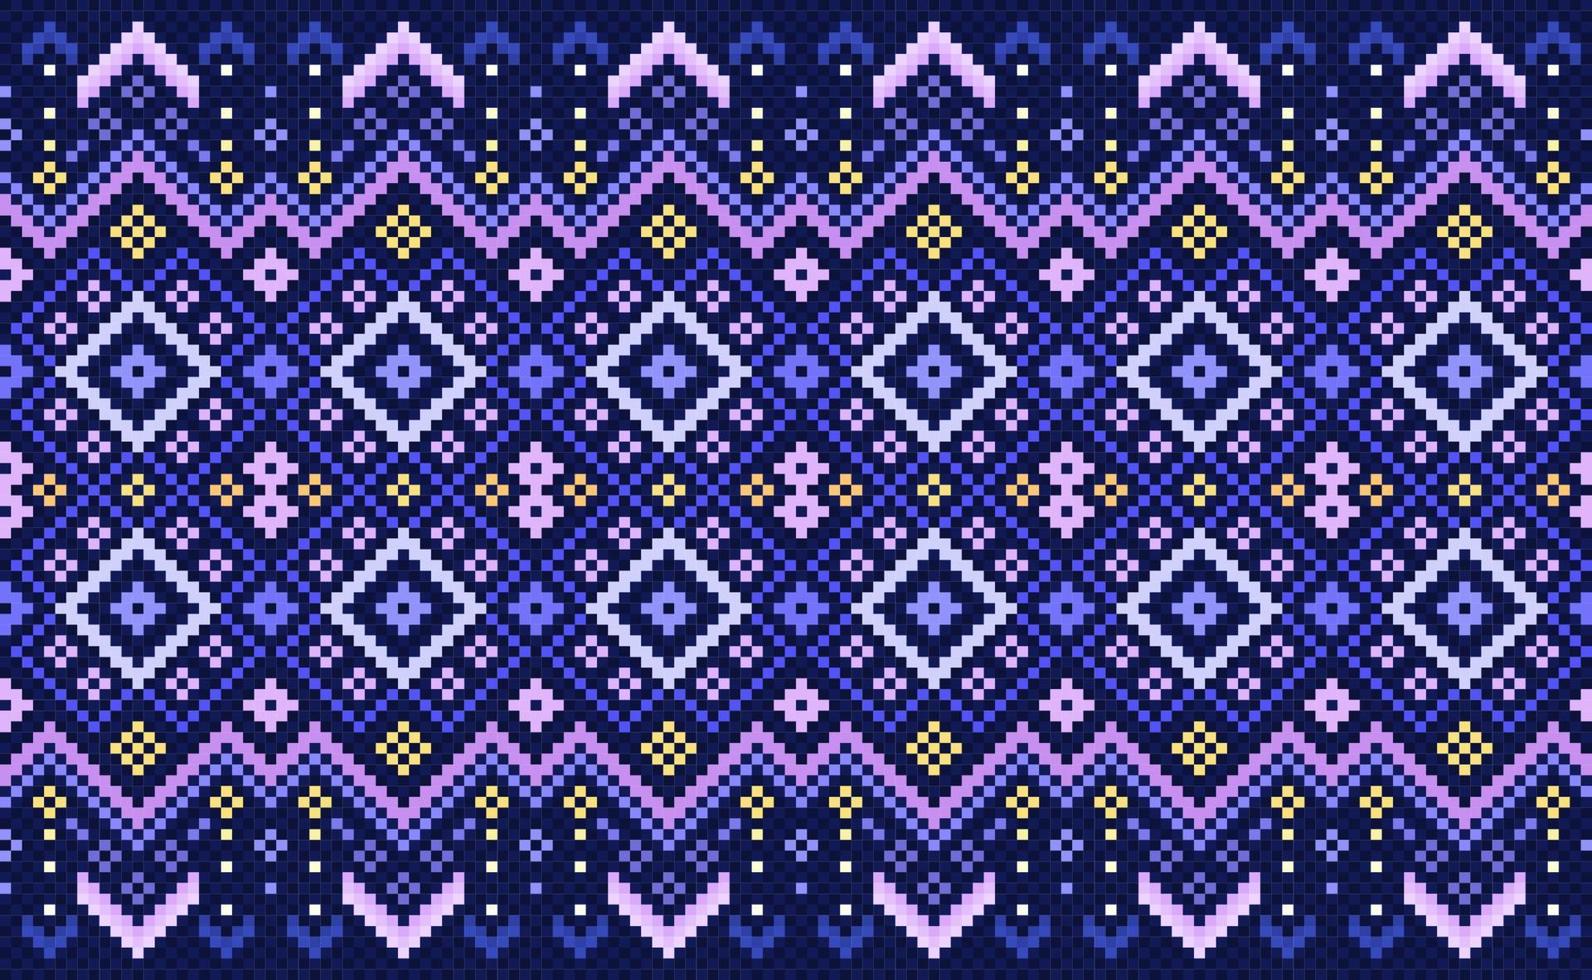 motif ethnique brodé, arrière-plan abstrait géométrique vectoriel, style aztèque classique au point de croix, motif violet magnifique horizontal, conception pour textile, tissu, toile de fond, impression numérique, graphique vecteur